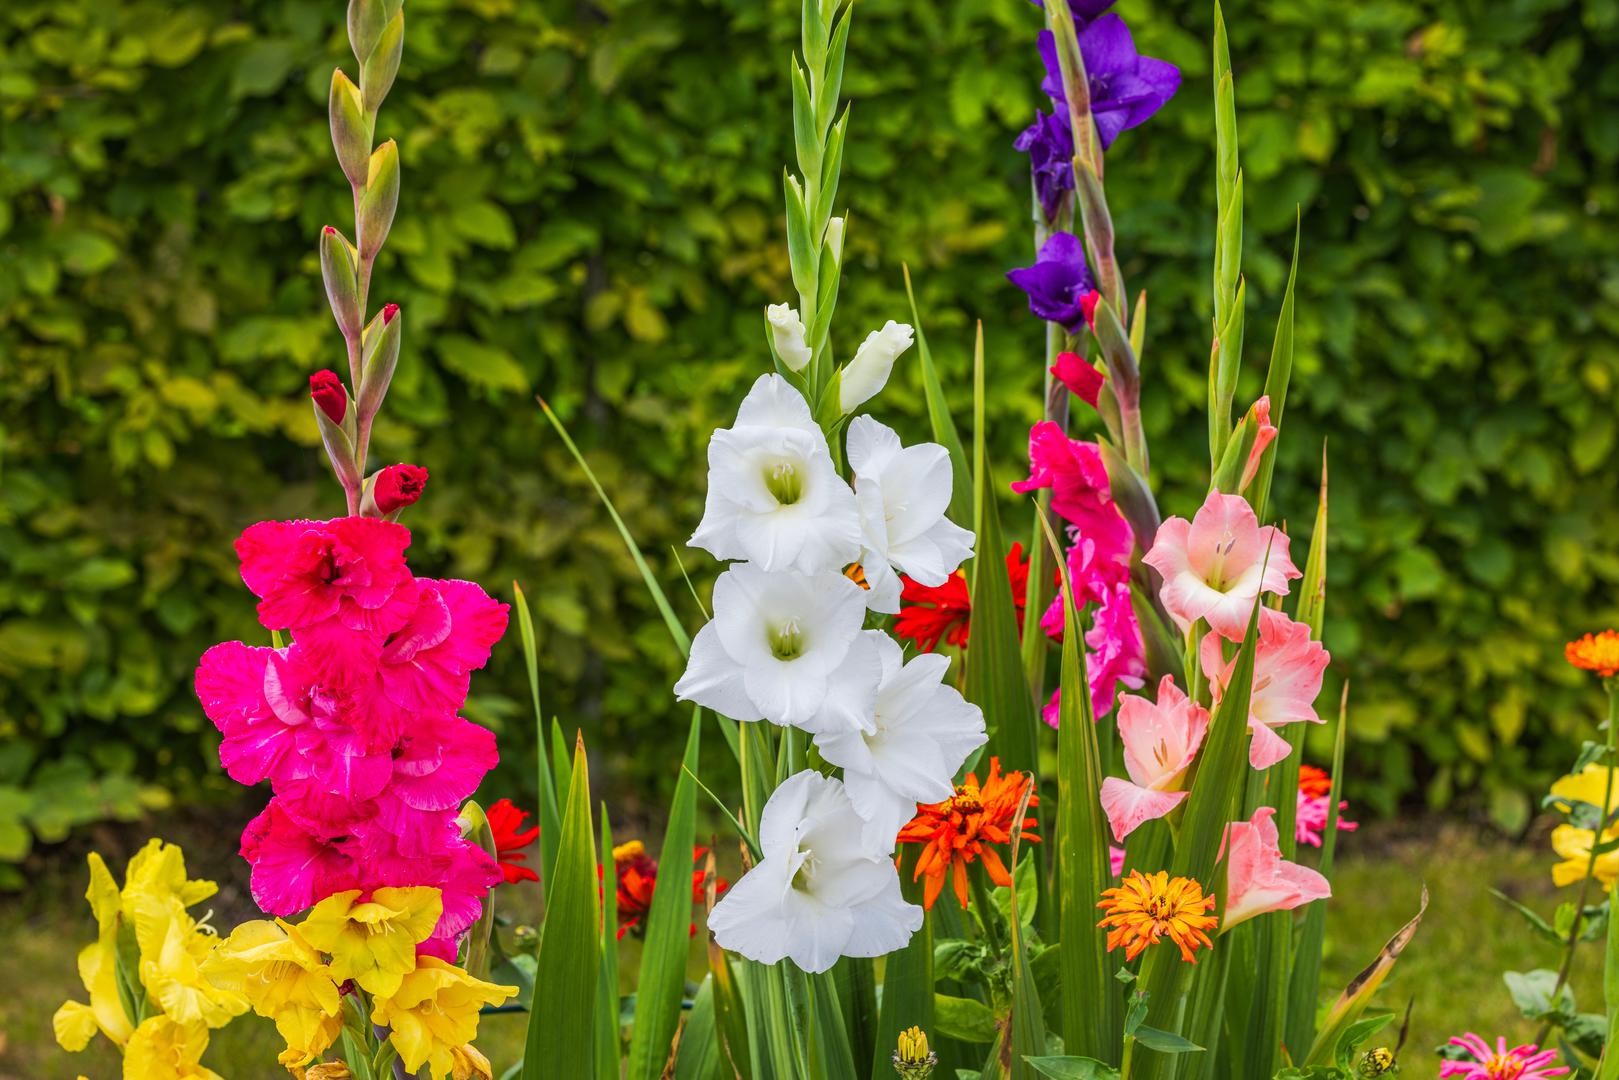 Strijelac (22. studenog – 21. prosinca) - Gladiole: Gladiole, simbol slobode i ljepote divljeg cvijeća, savršeno odražavaju otvorenost uma i avanturistički duh Strijelca. Ovi cvjetovi dodaju boju i vitalnost u vrt te potiču istraživački duh Strijelca.